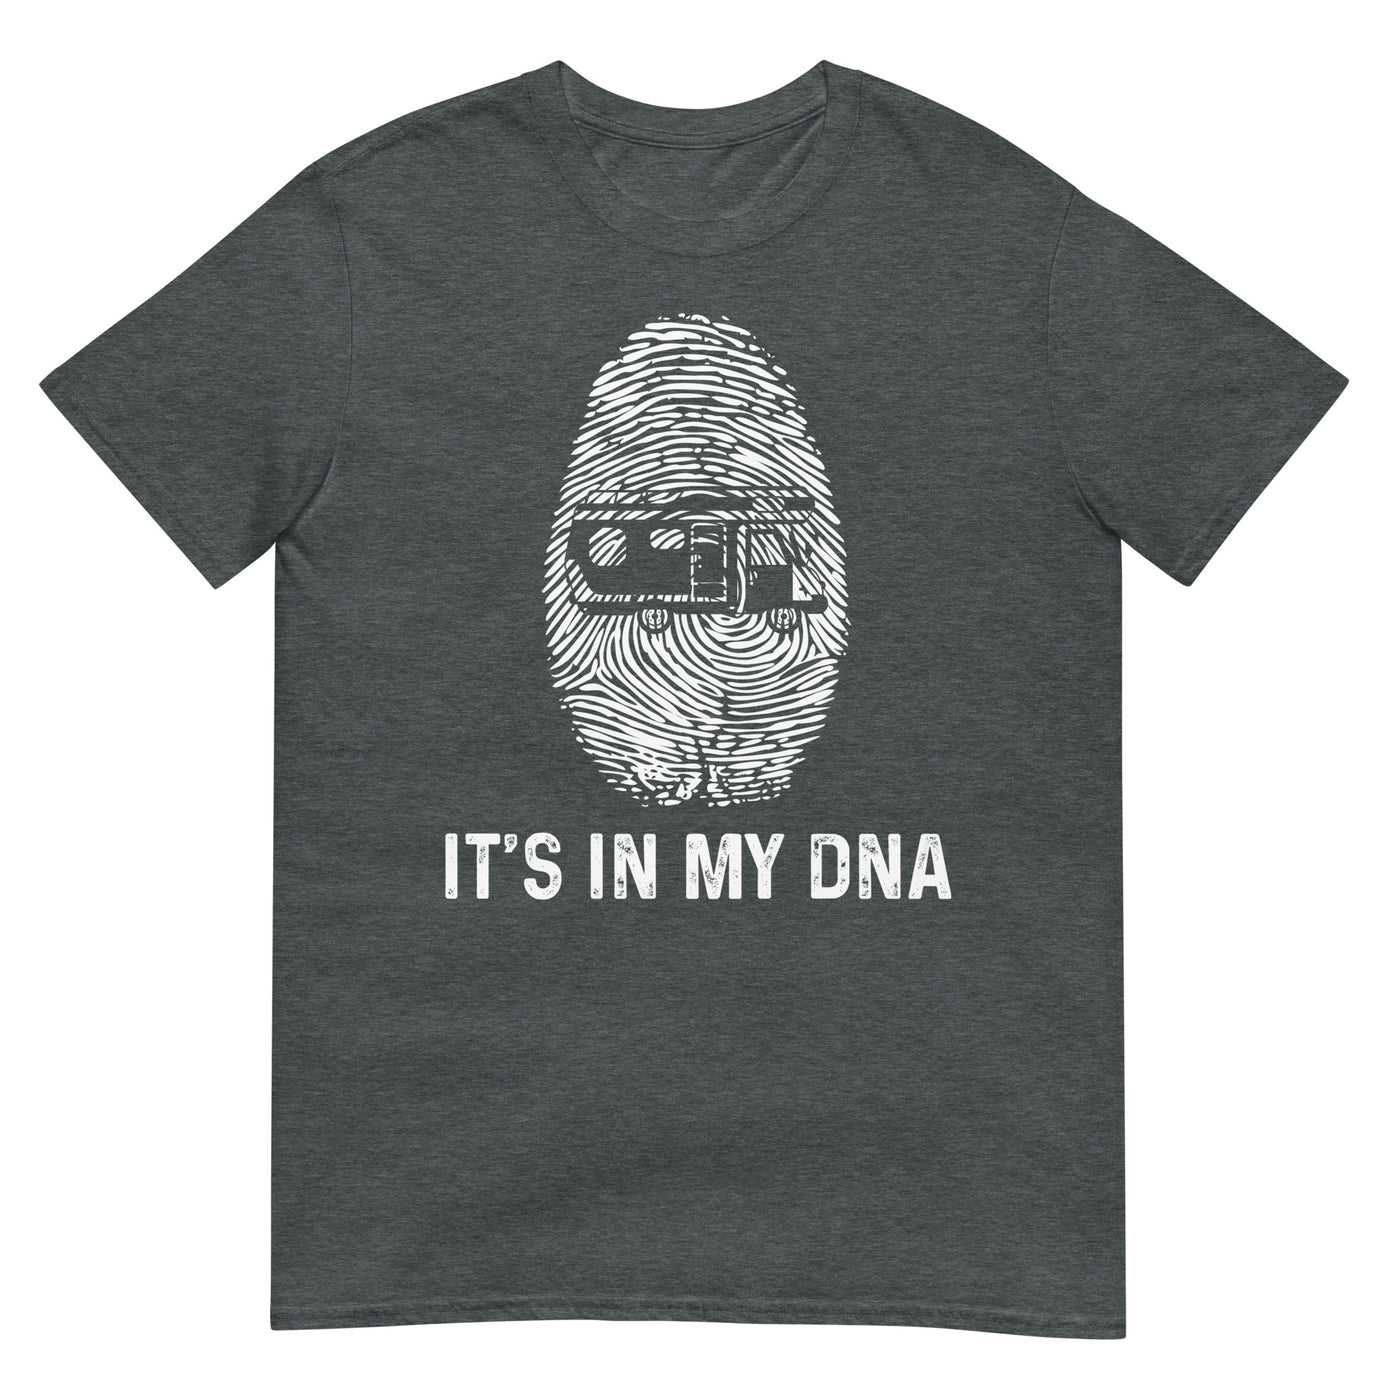 It's In My DNA - T-Shirt (Unisex) camping xxx yyy zzz Dark Heather